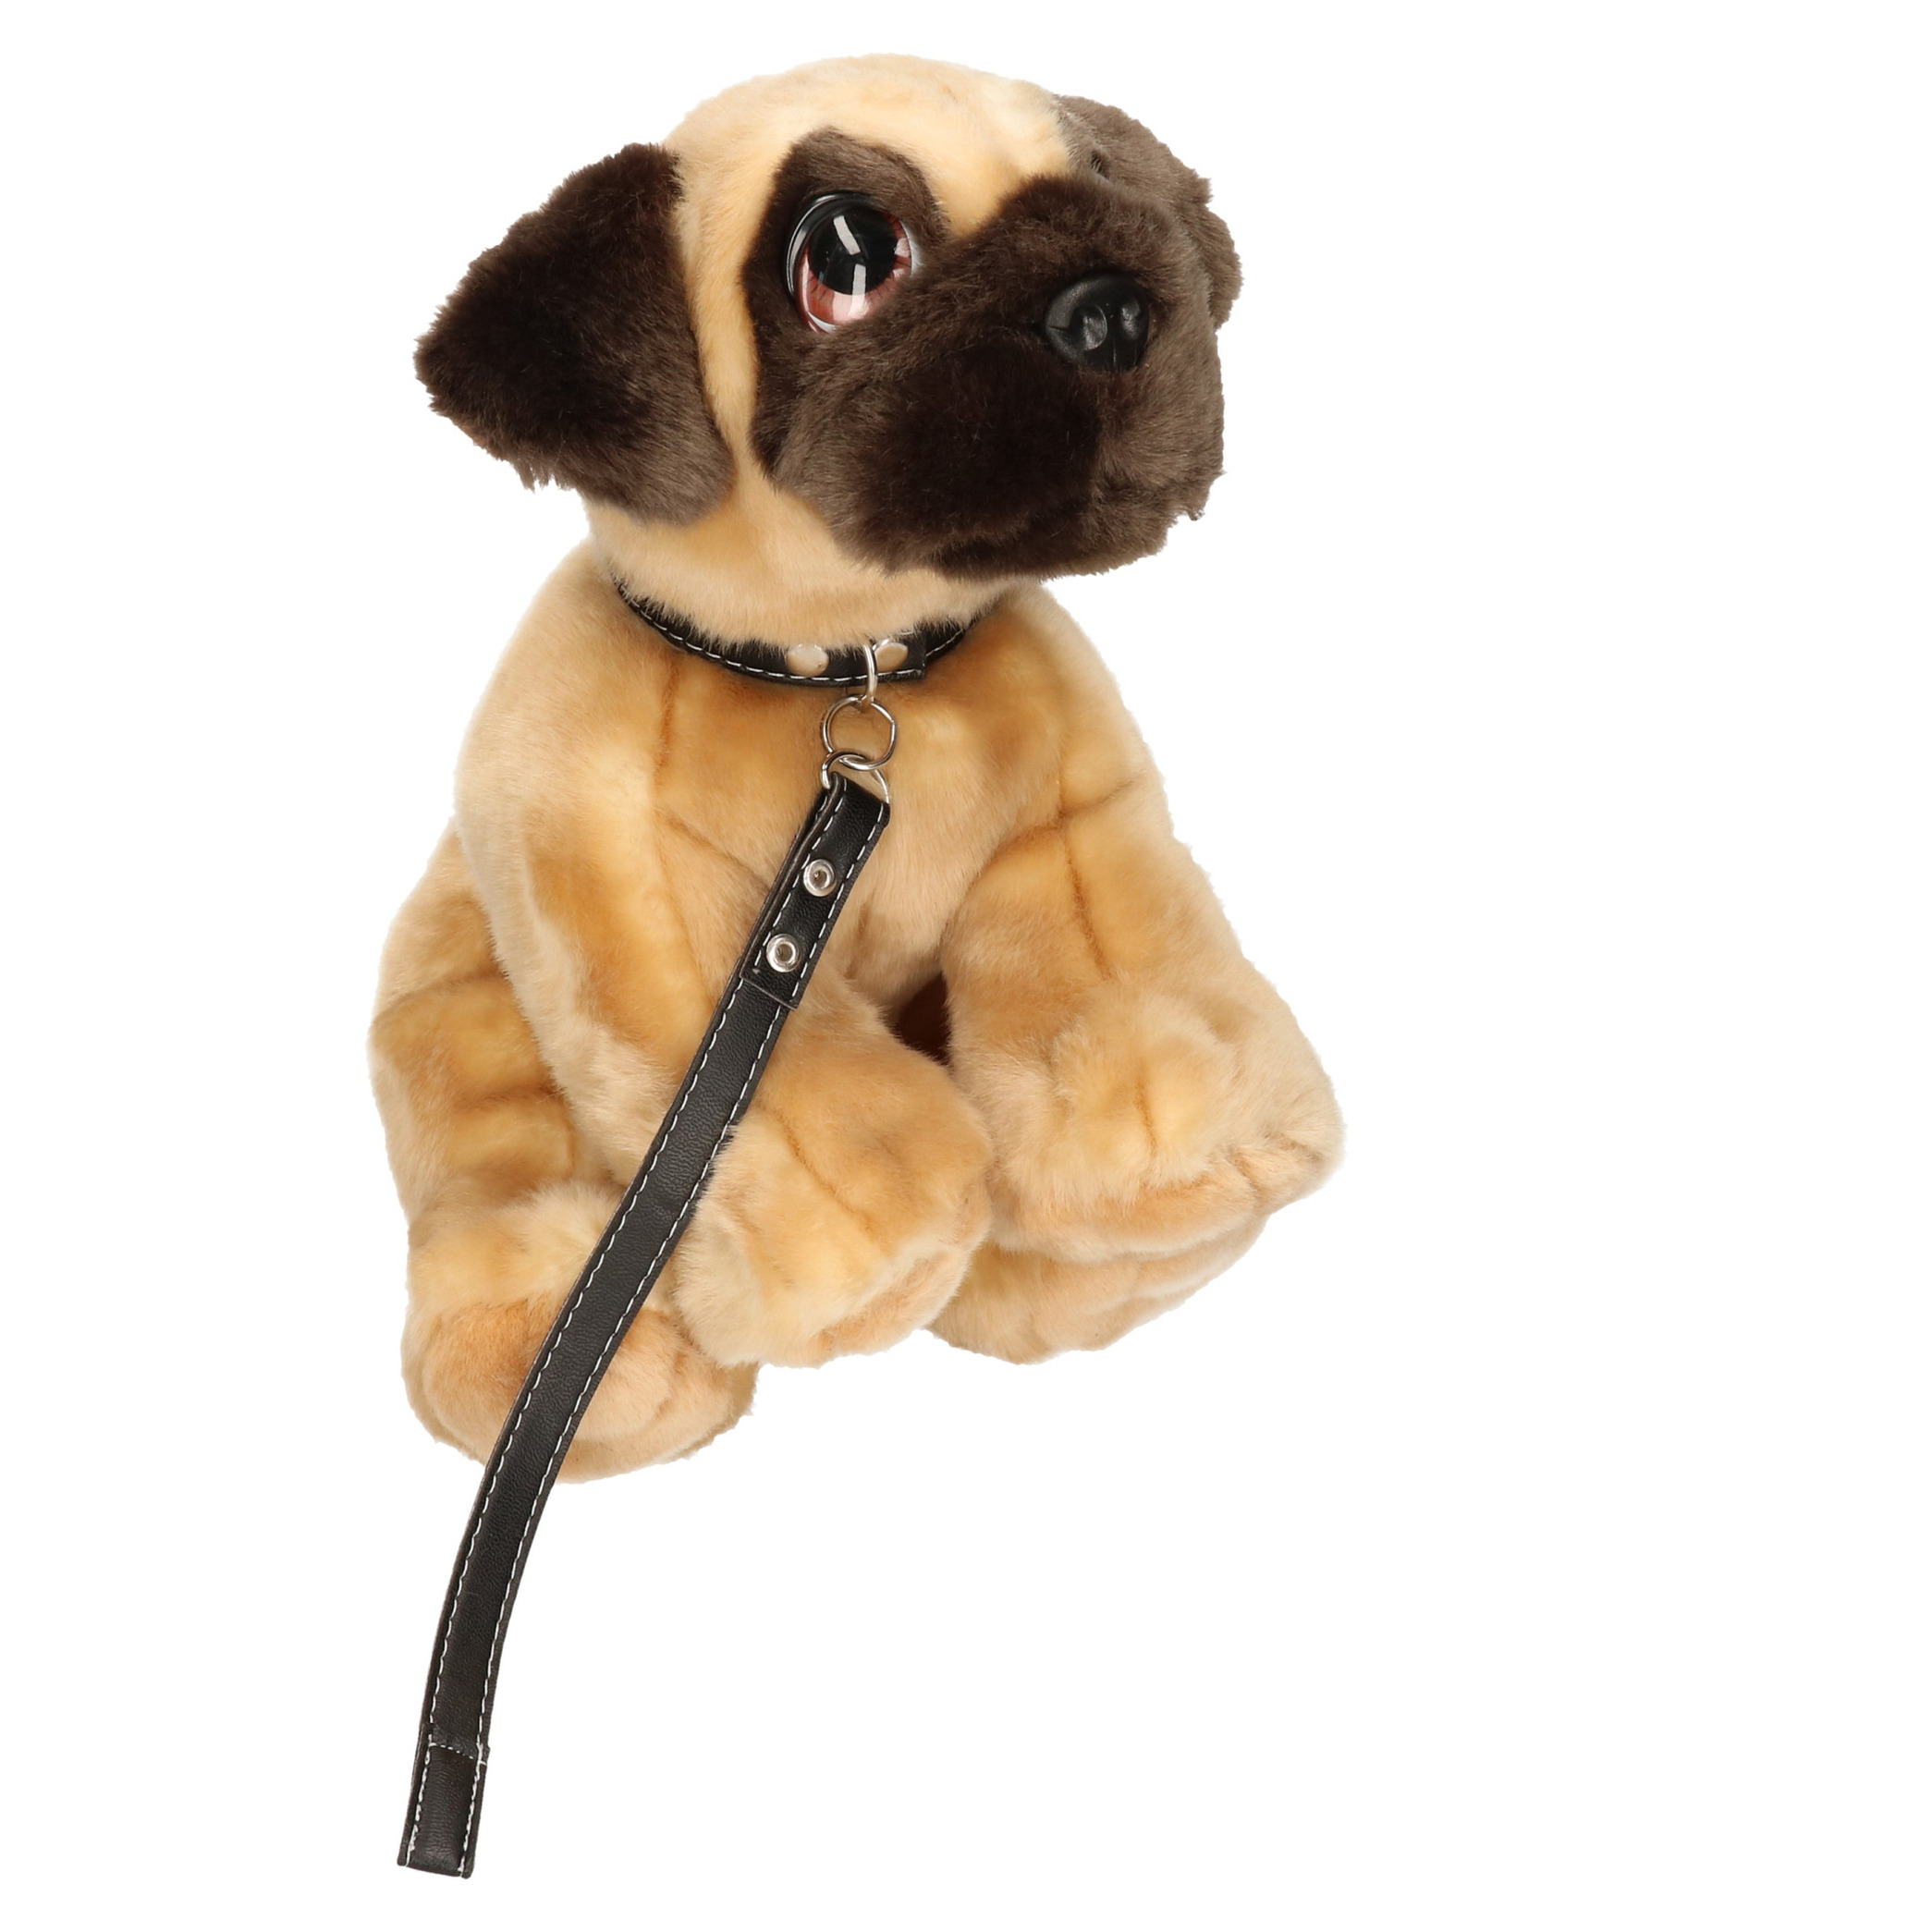 Keel Toys pluche hond bruine Mopshond-Pug met riem knuffel 30cm